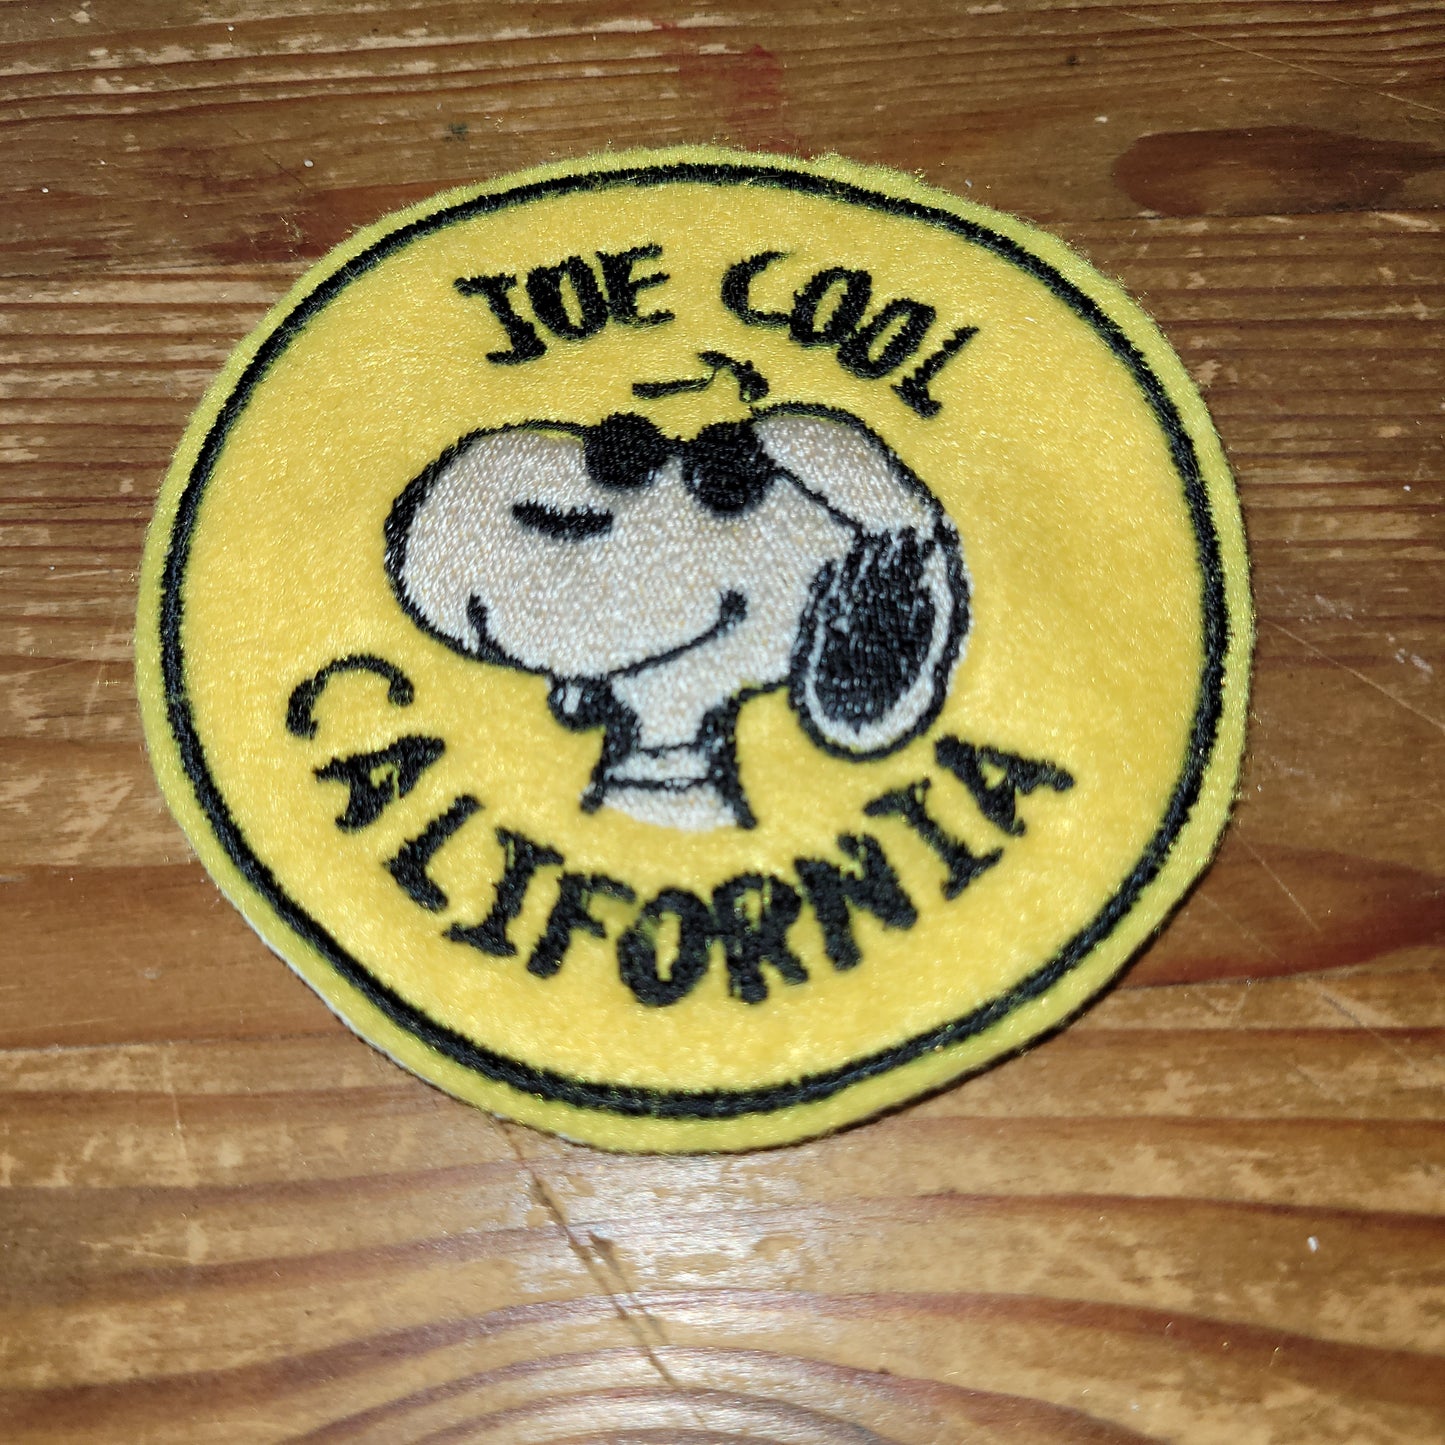 Snoopy "Joe  Cool Caliornia"